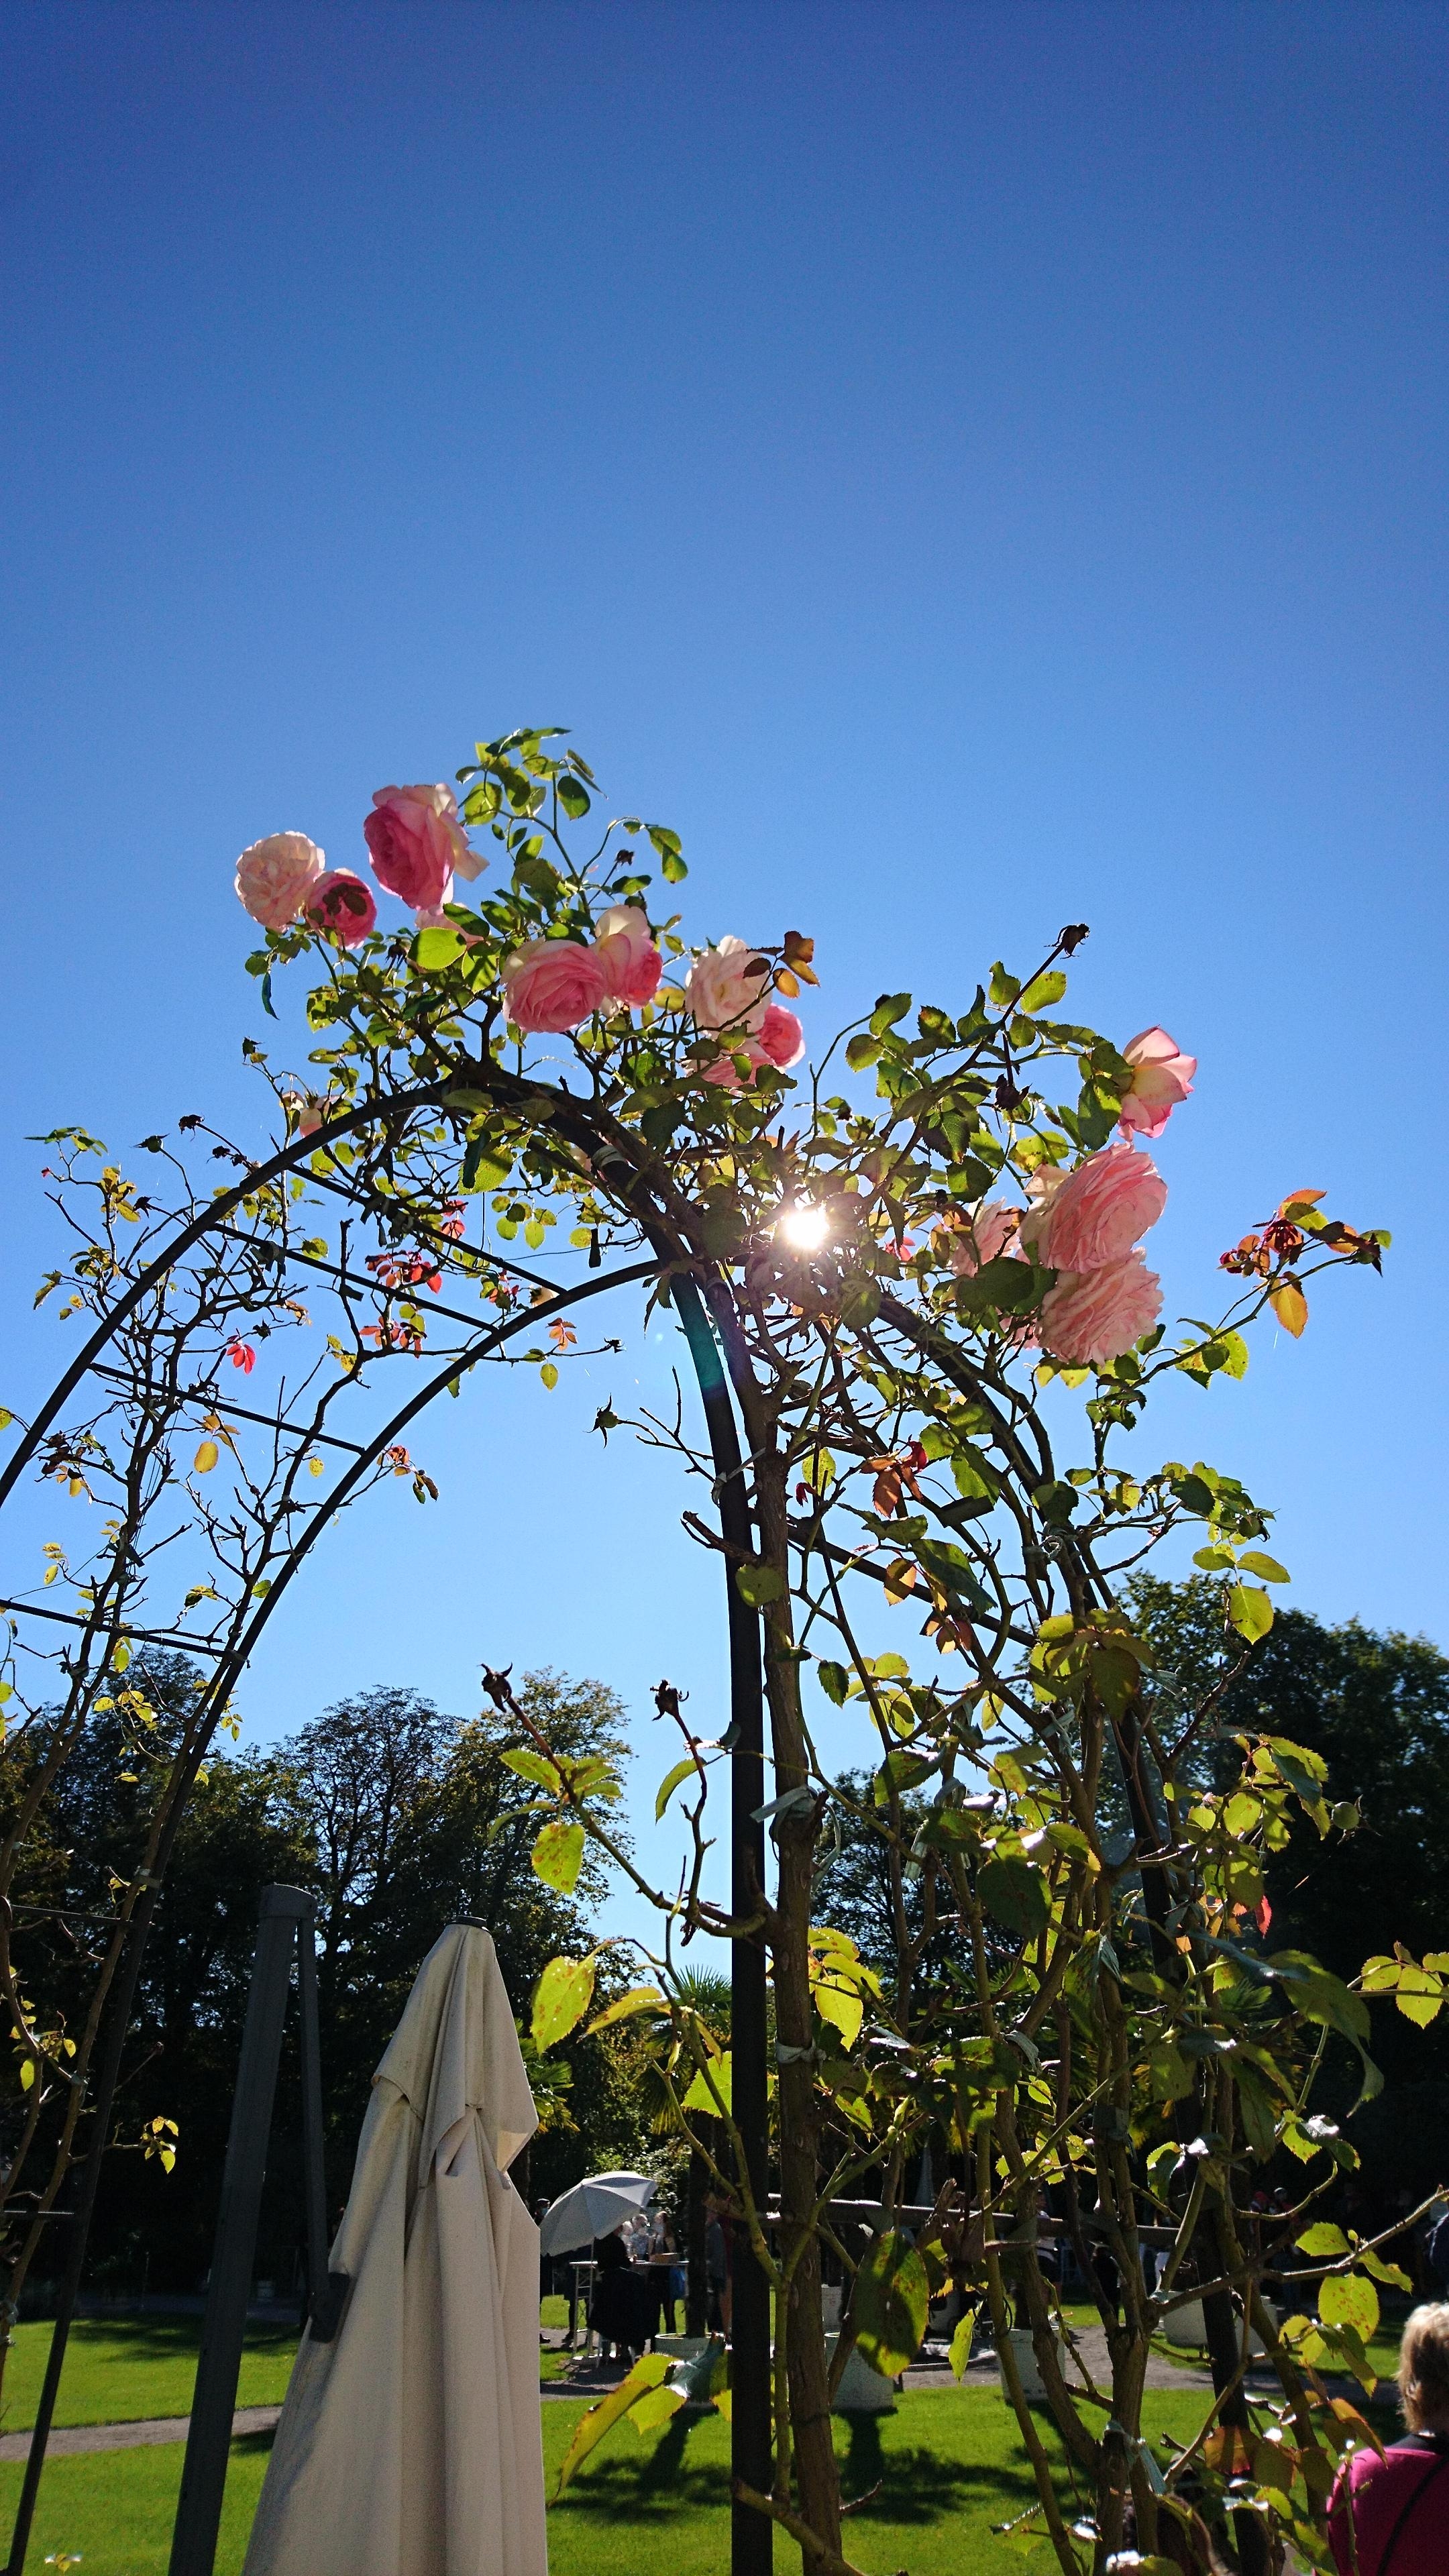 Schloßpark Rosen in der Herbstsonne

#Nymphenburg #Herbst #Rosen